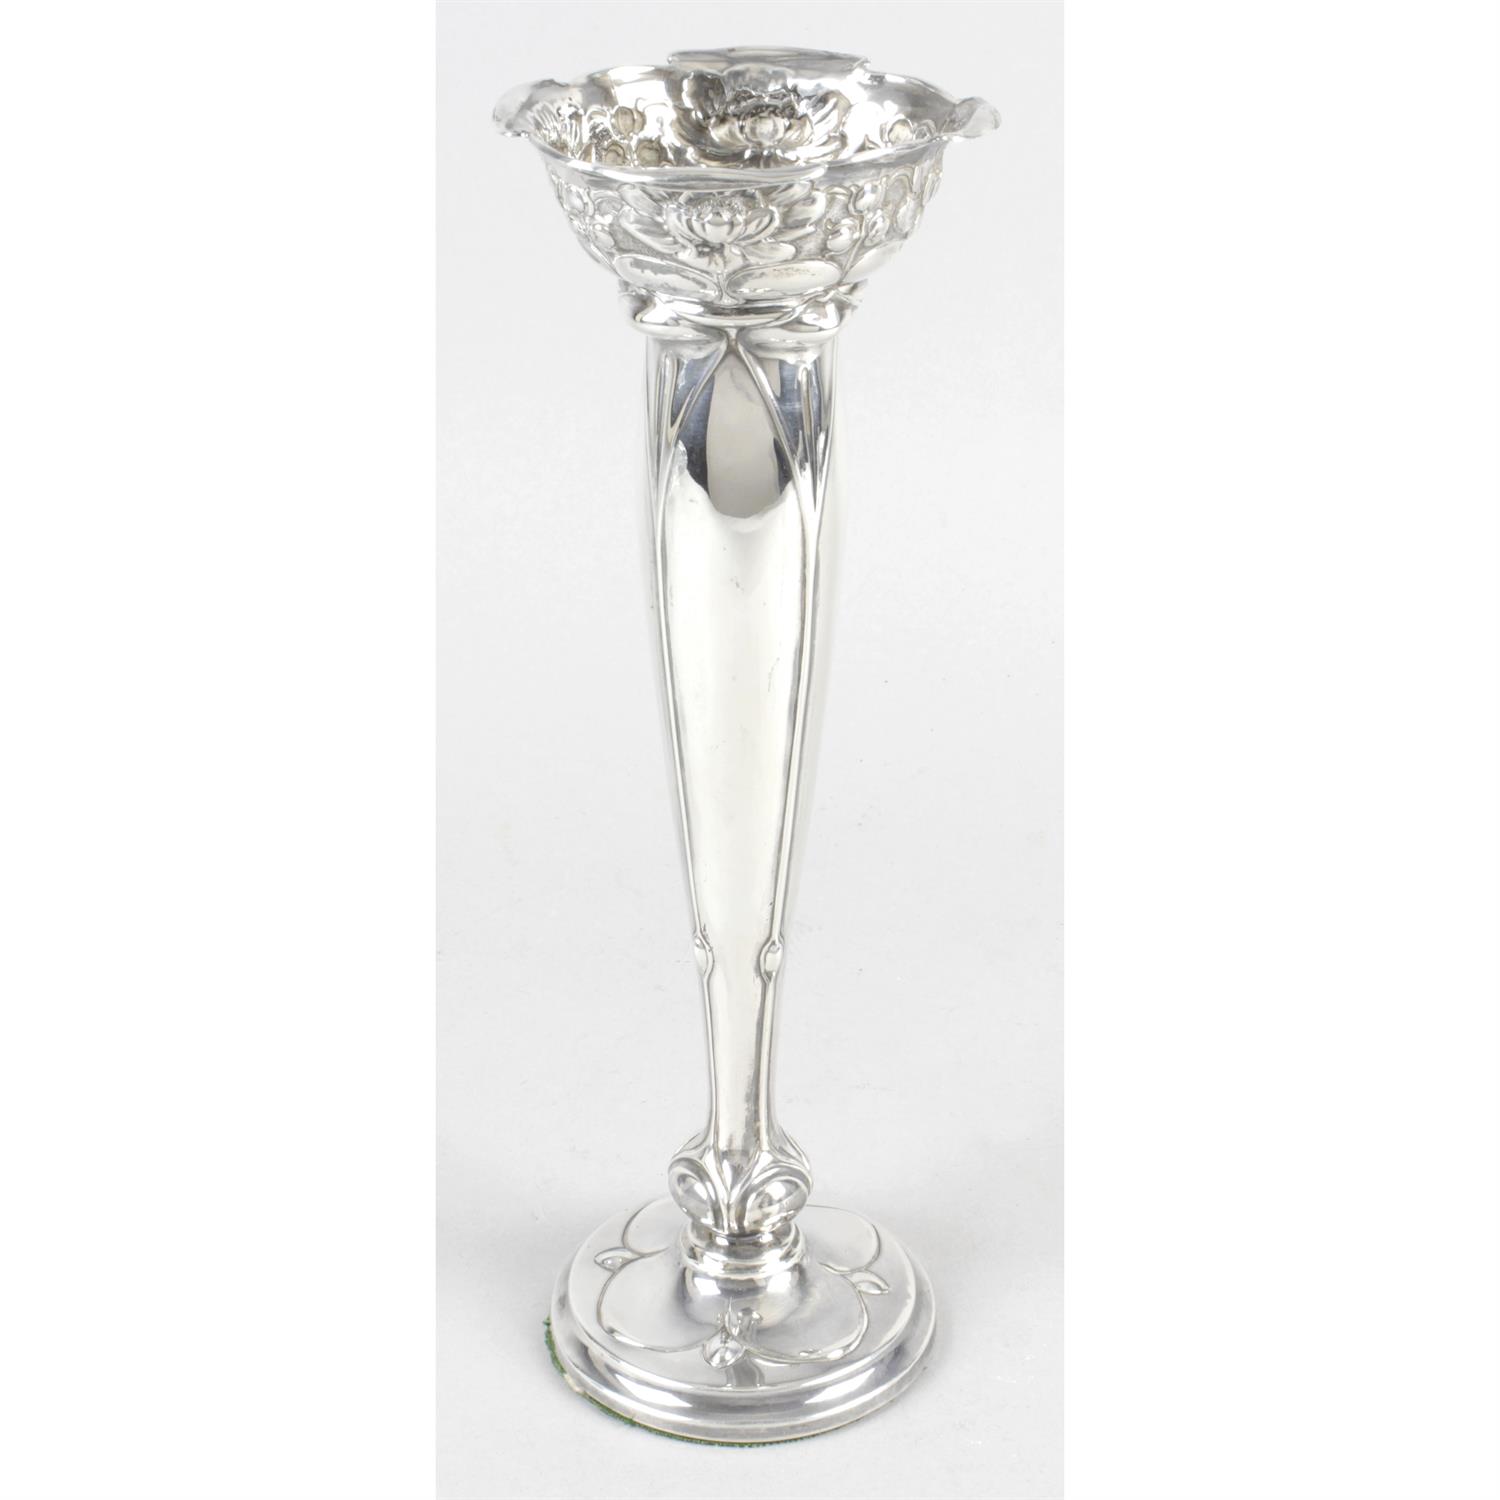 An Edwardian Art Nouveau silver vase.